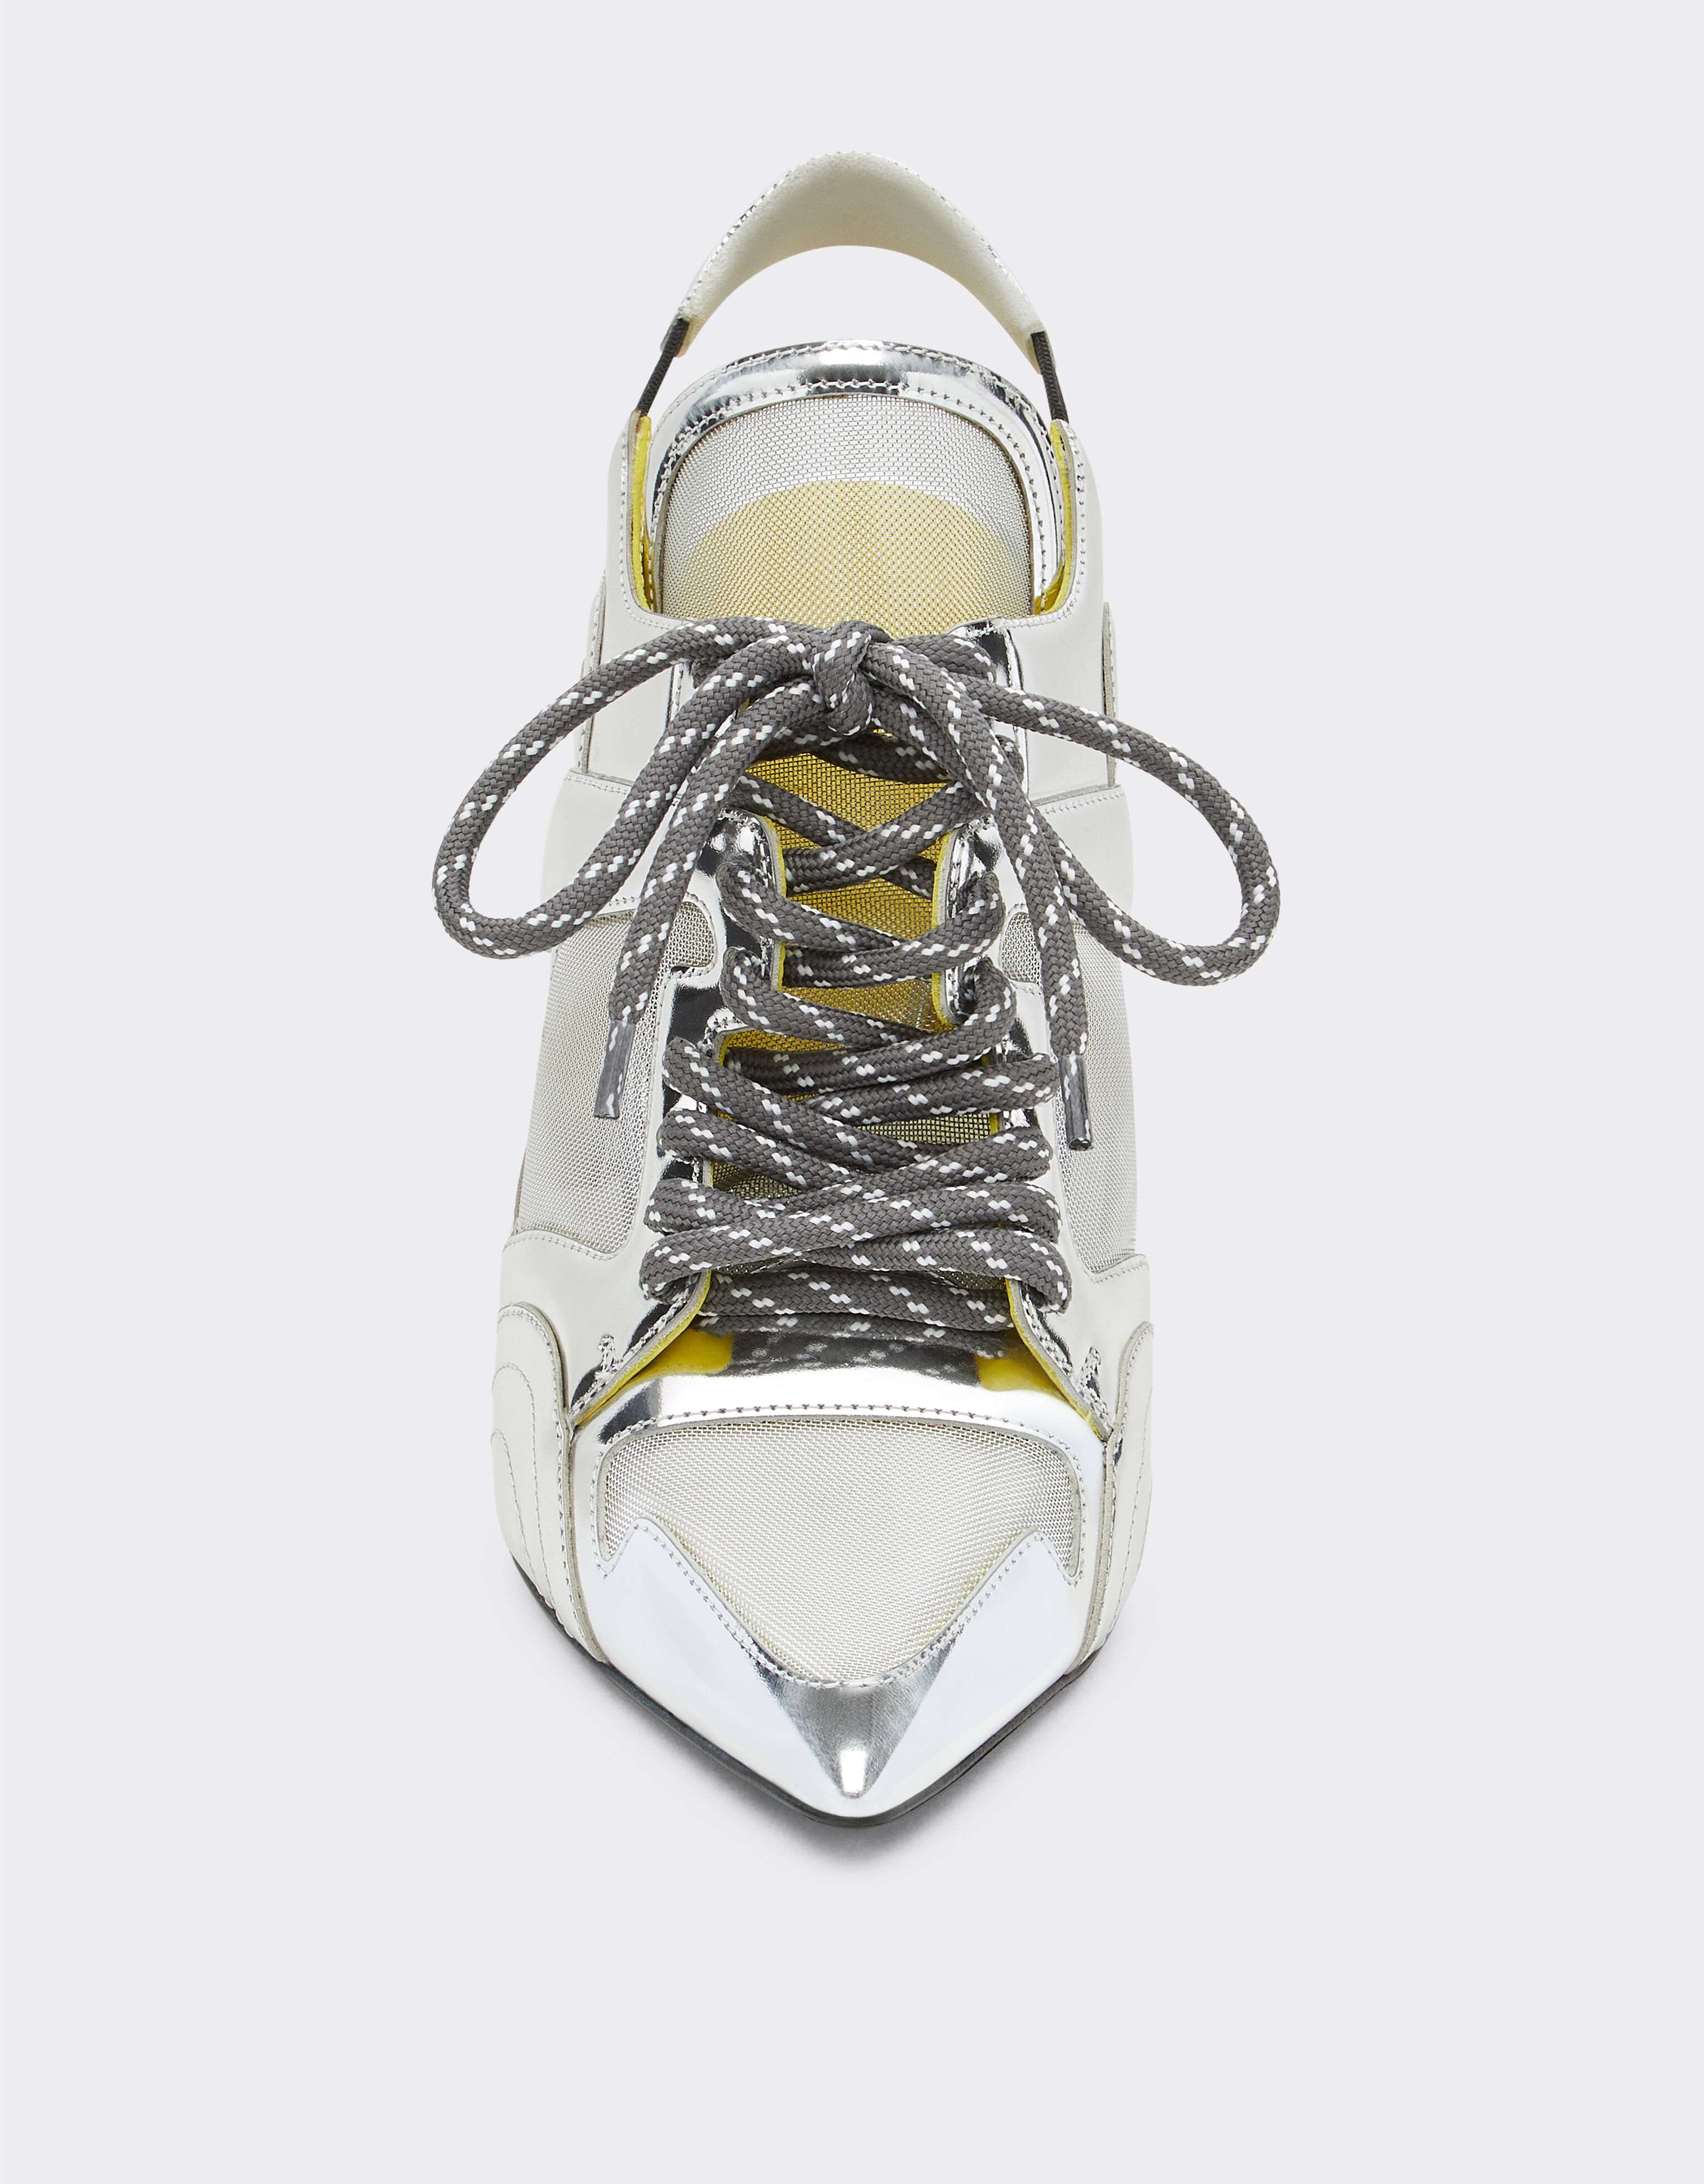 Ferrari Miami Collection slingback sandals in silver-tone leather Silver 21272f